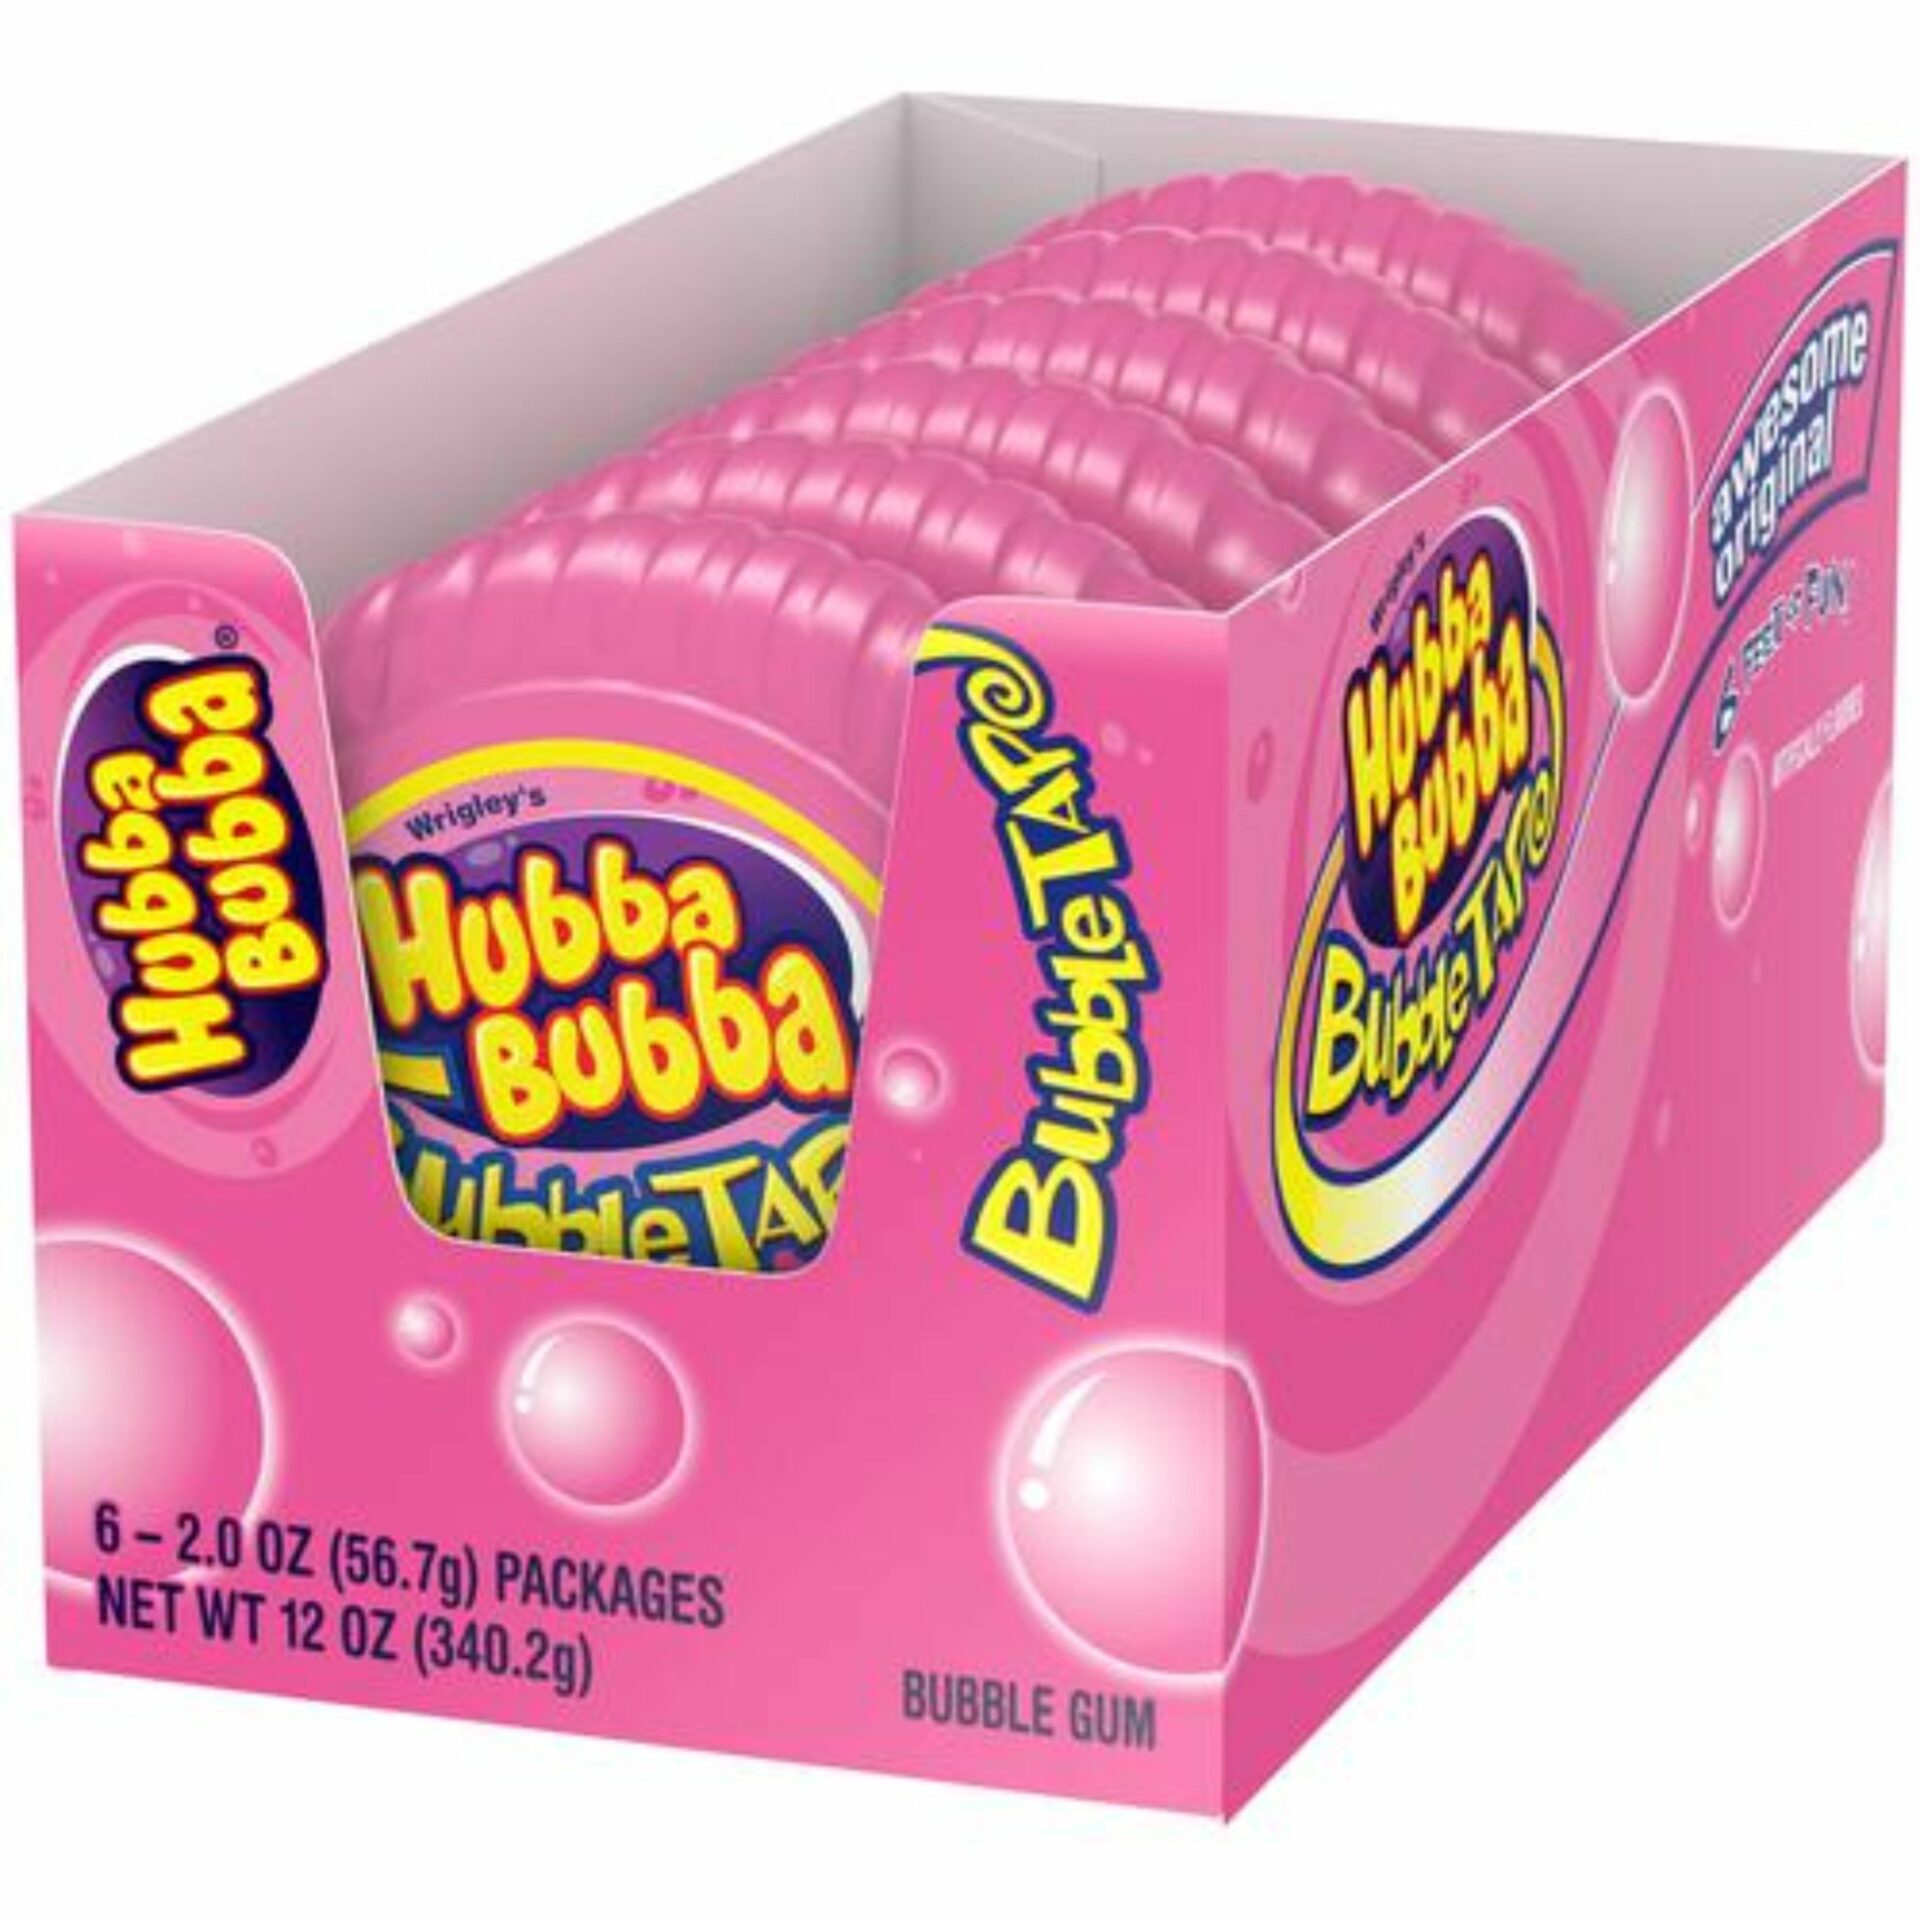 Hubba Bubba Bubble Tape Original, 2.78 oz., 6 ct